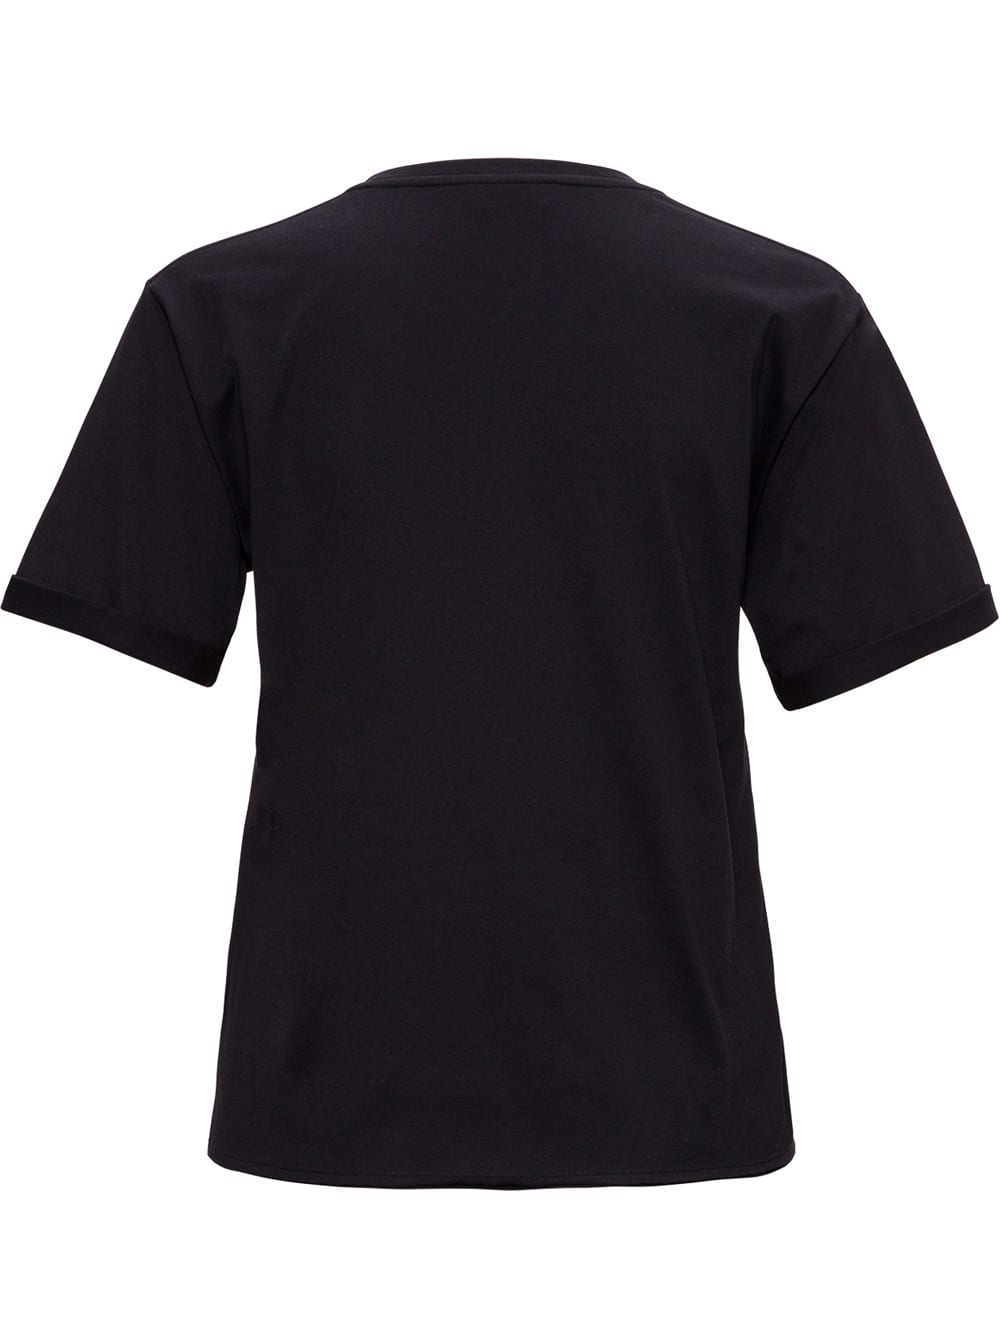 Saint Laurent Black Jersey Logo T-shirt